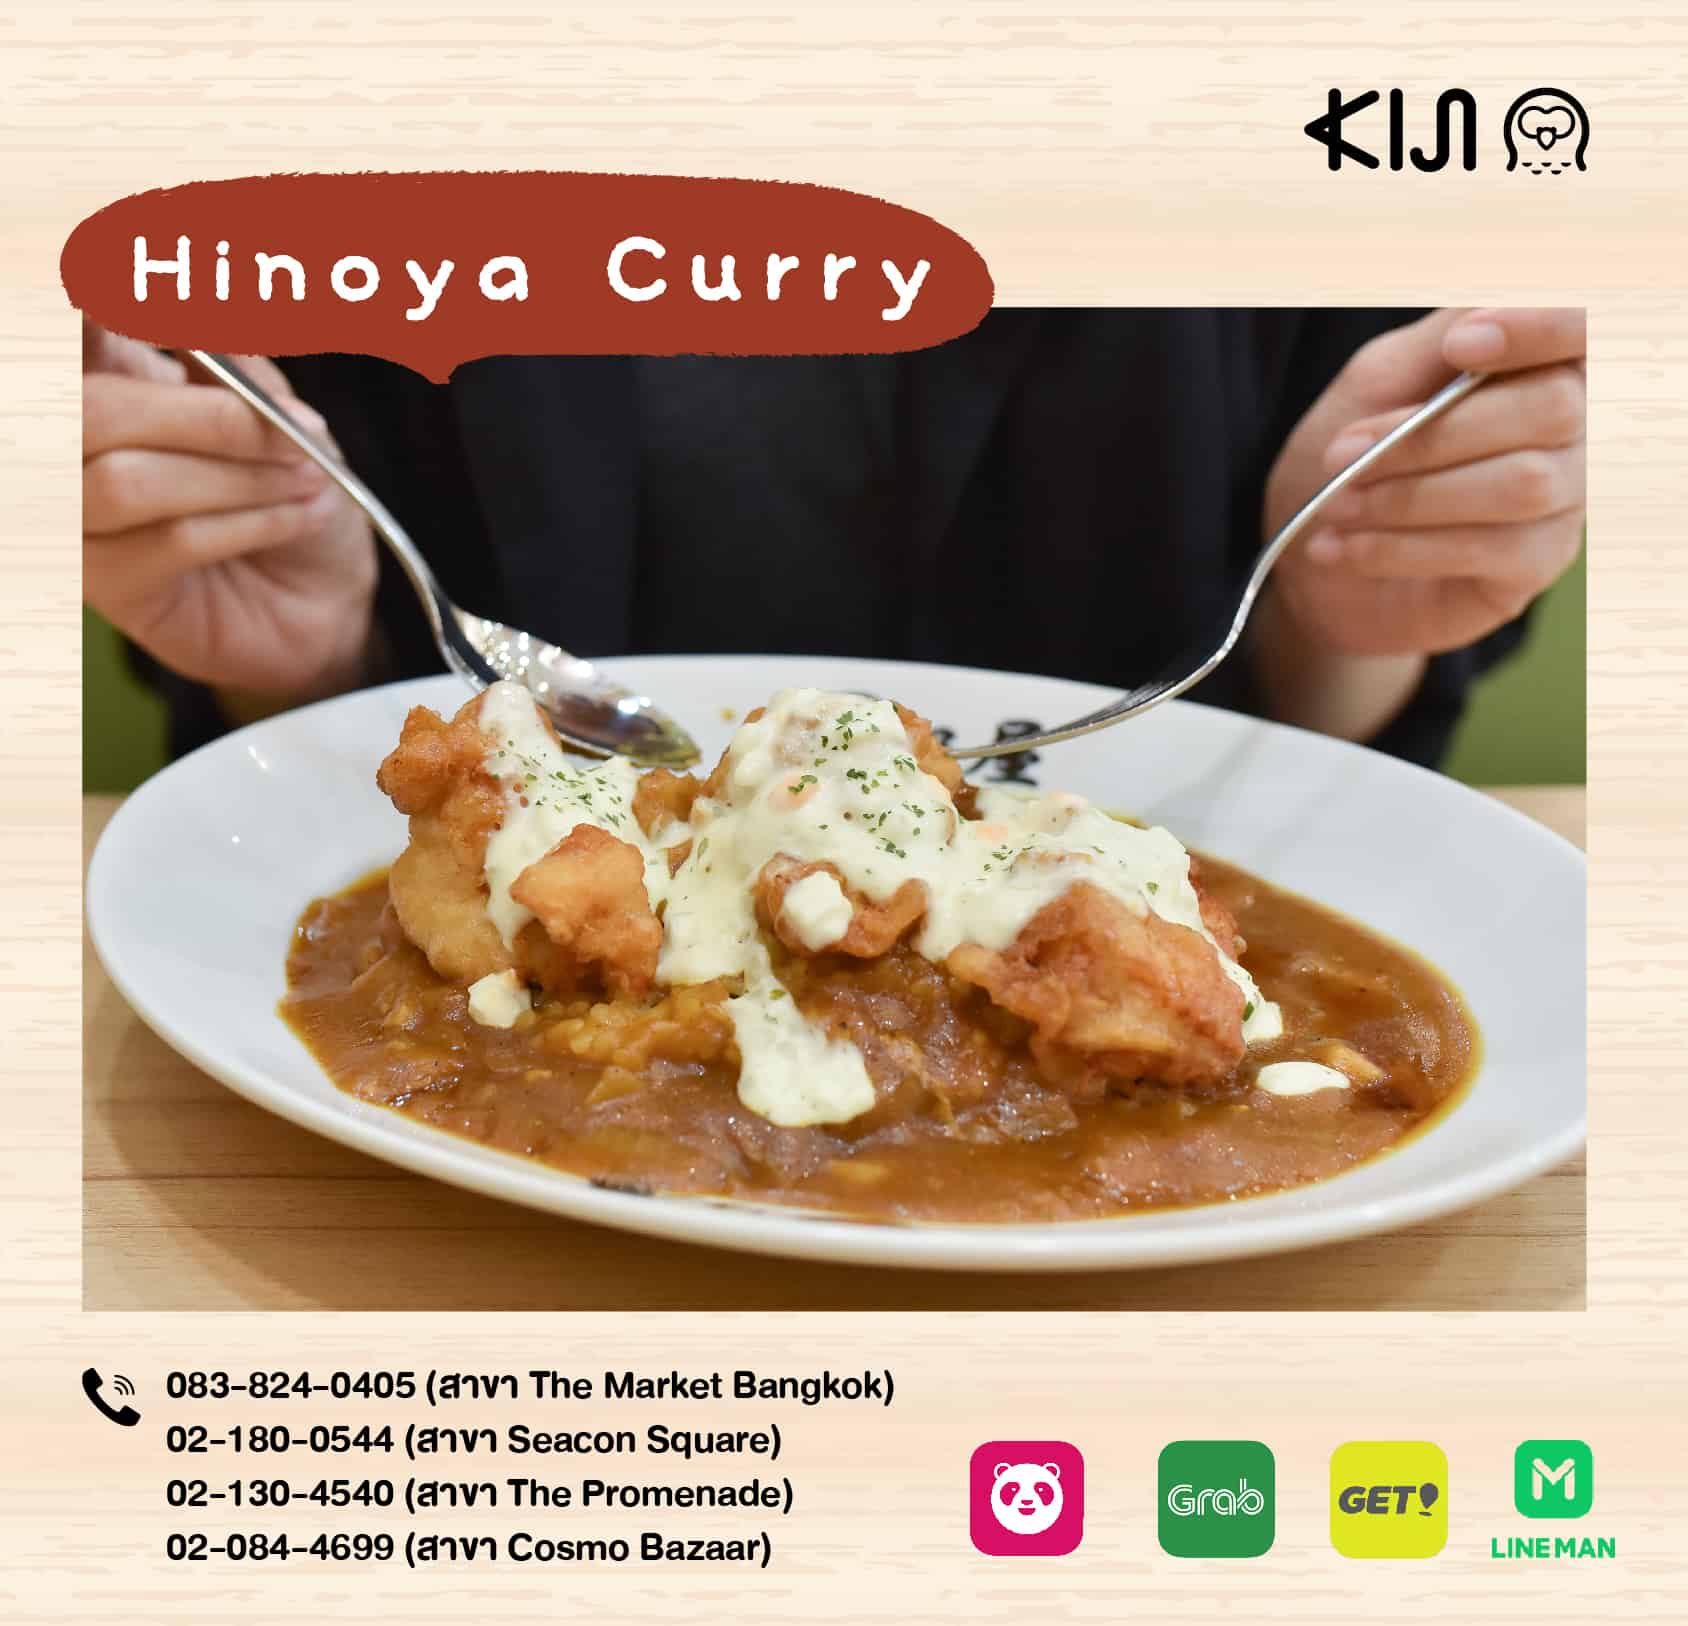 ข้าวแกงกะหรี่ Hinoya Curry พร้อม เดลิเวอรี่ ถึงบ้าน